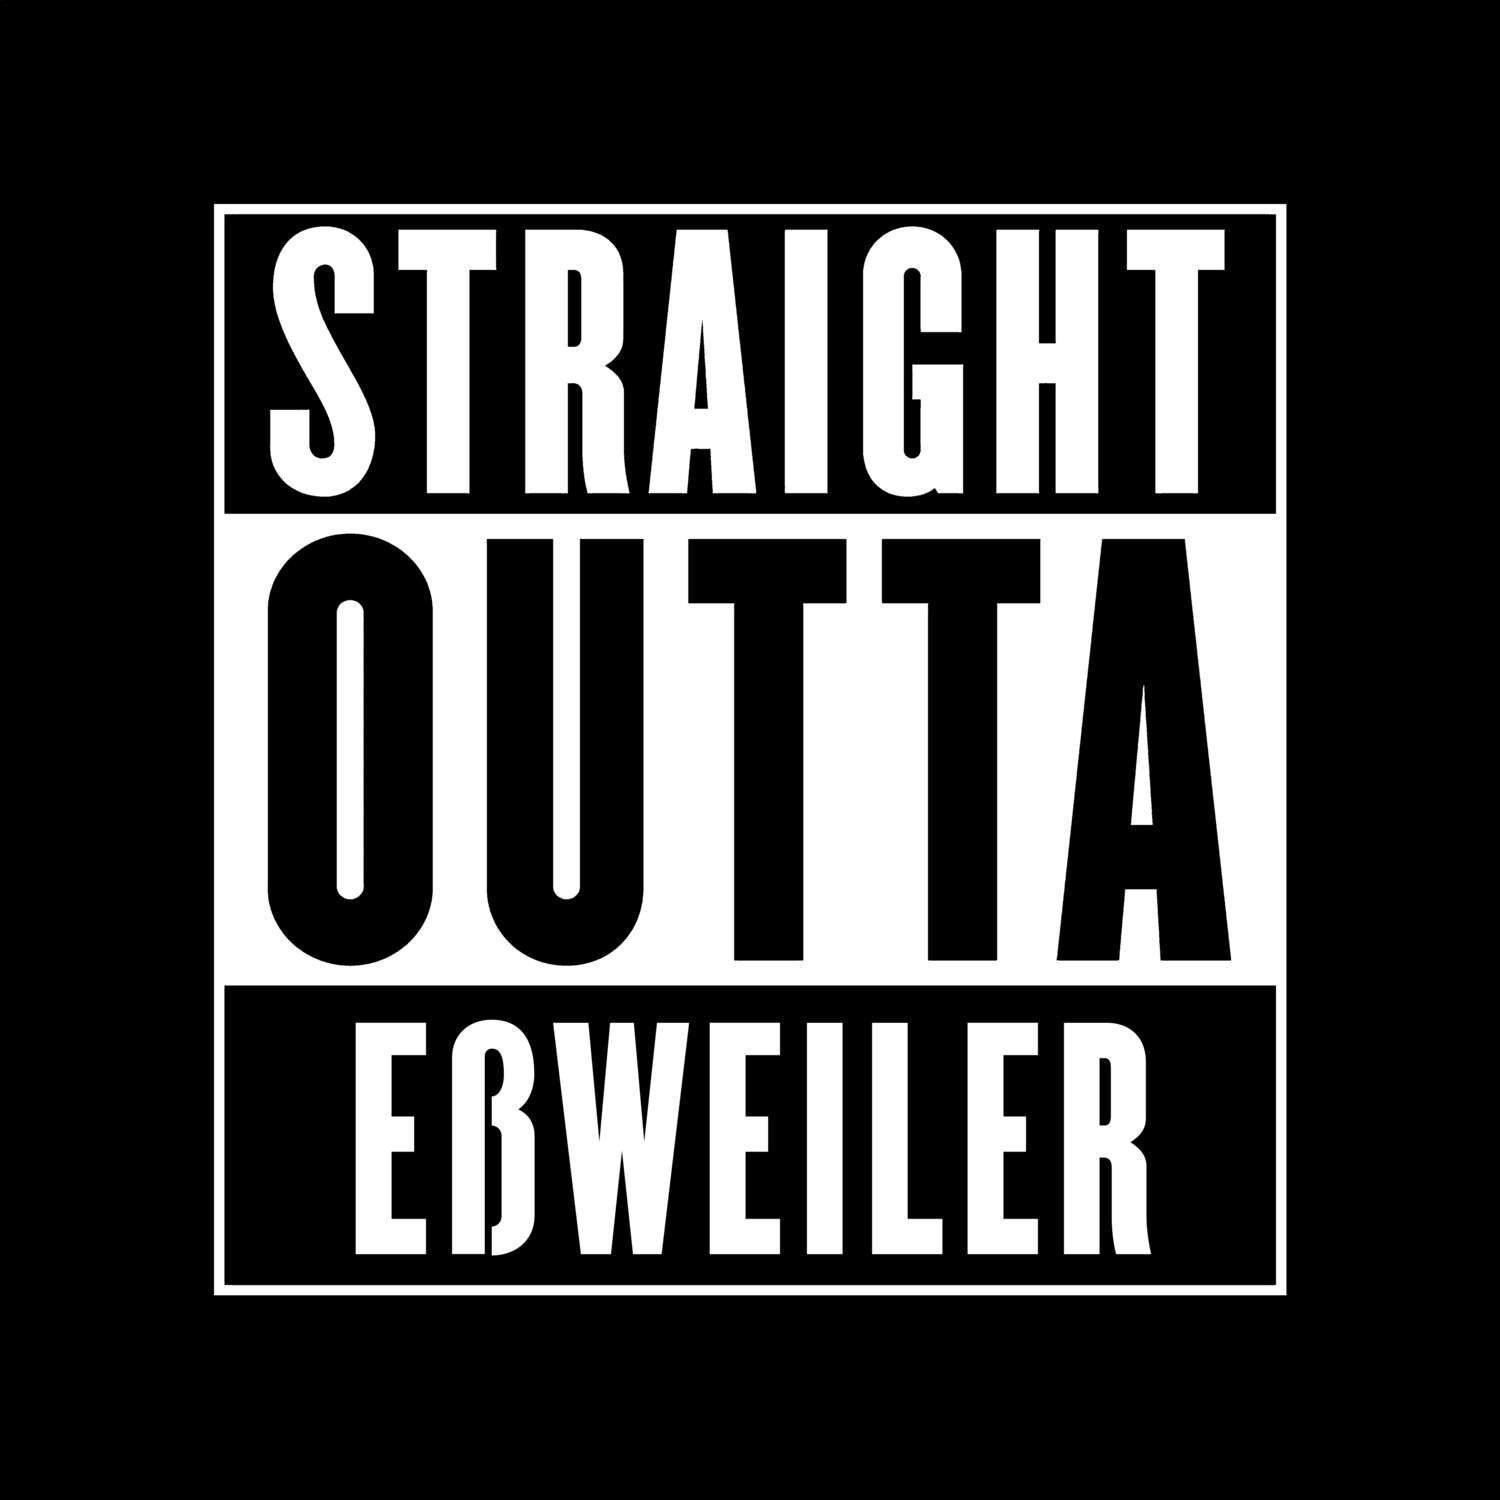 Eßweiler T-Shirt »Straight Outta«